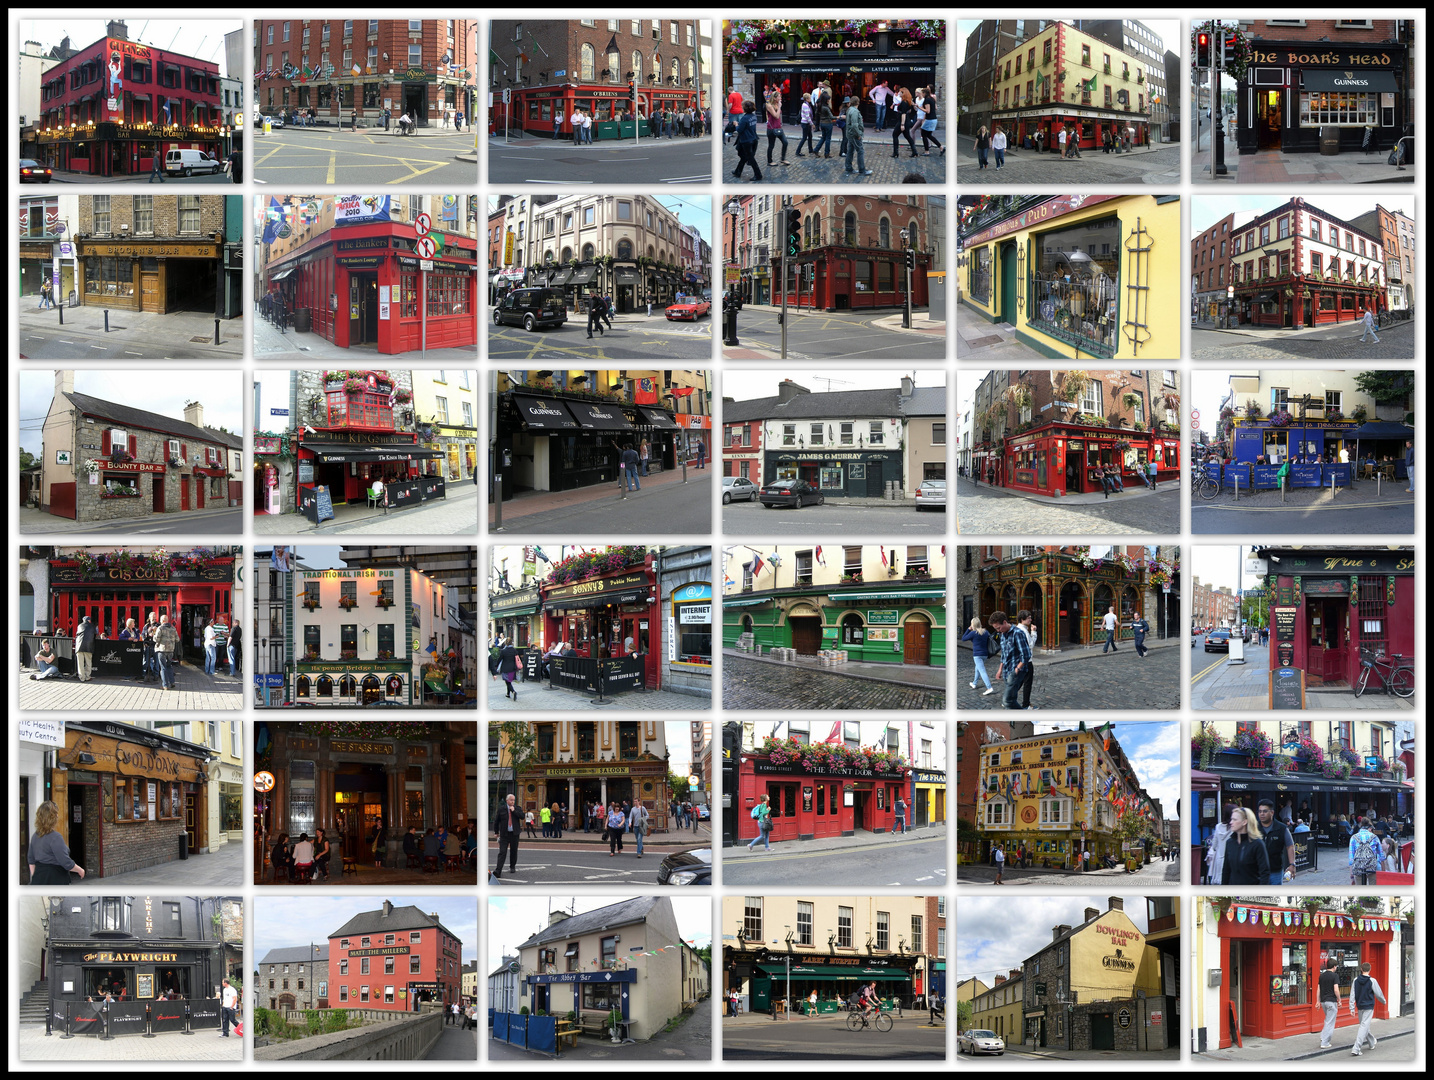 Irish Pub's - Ireland